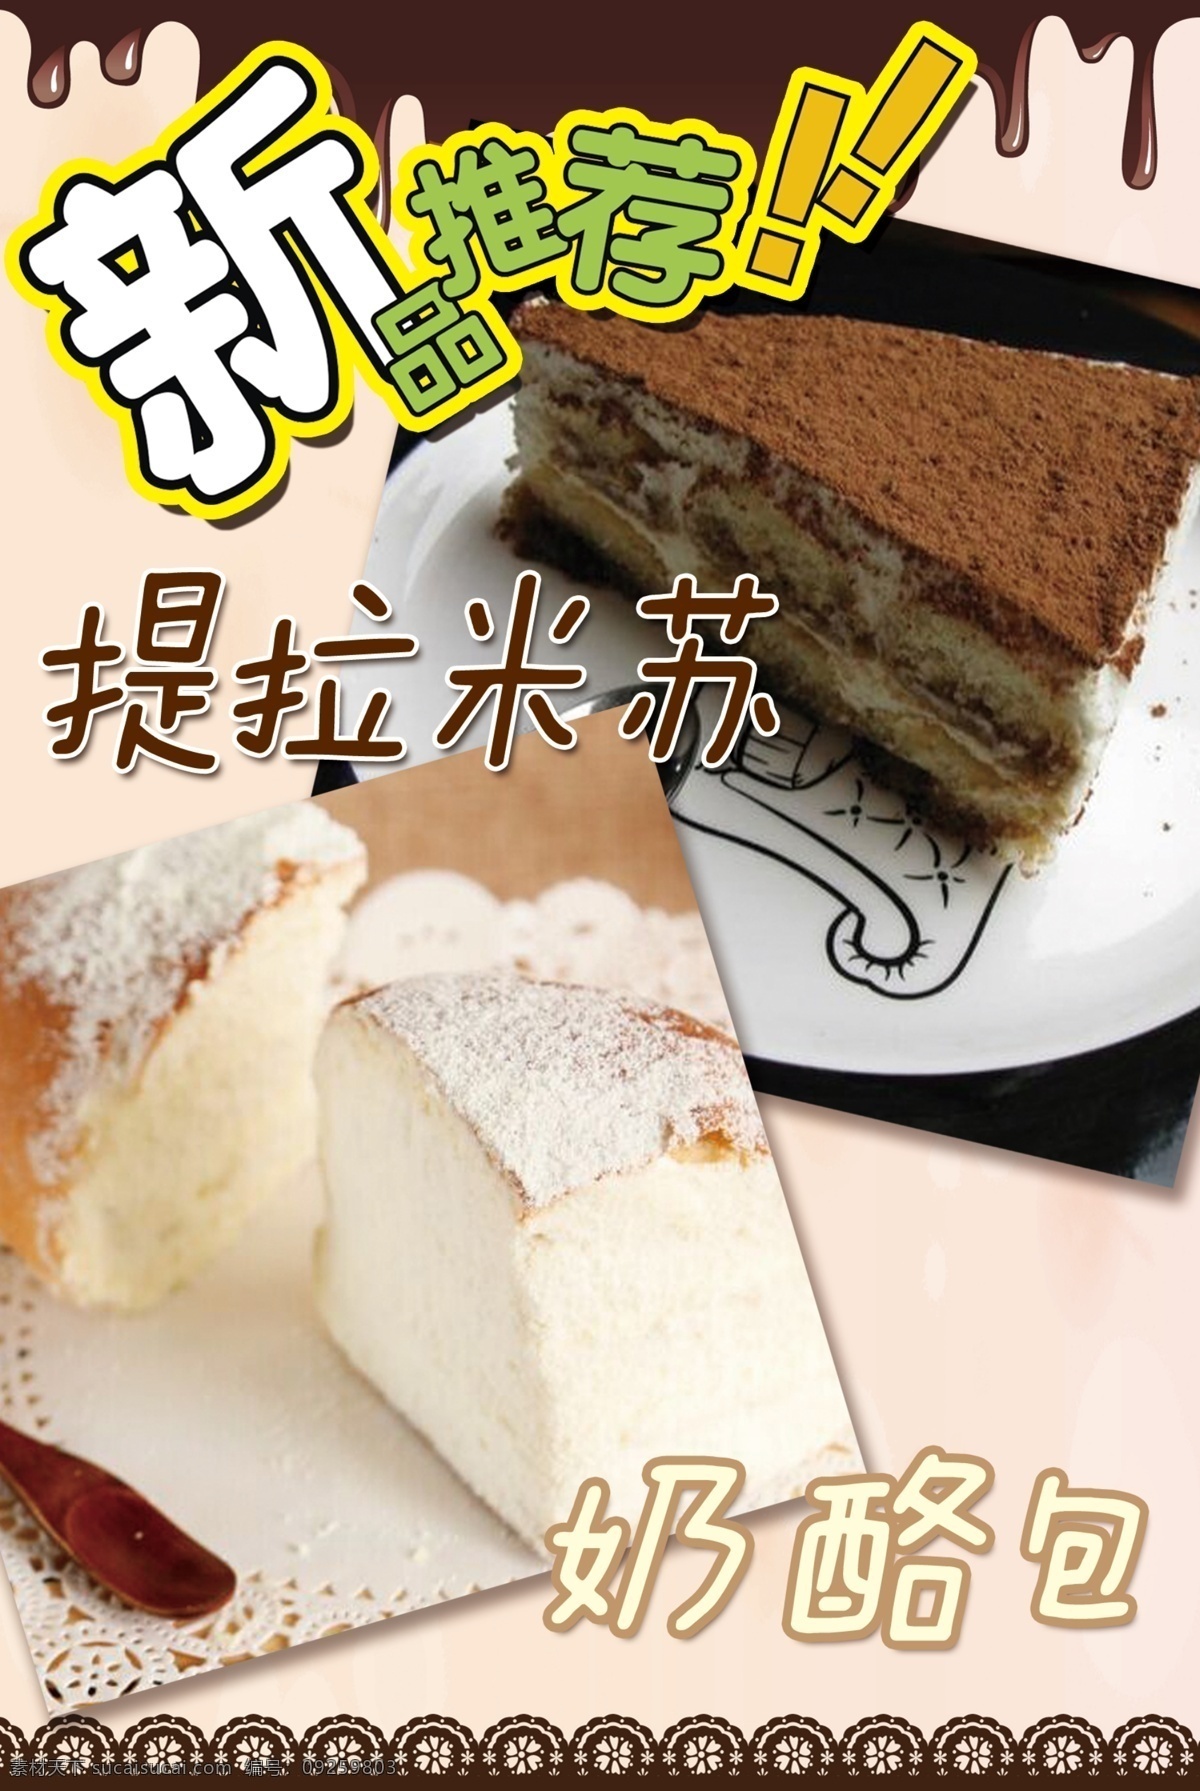 提拉米苏 奶酪包 新品推荐 蛋糕 店 海报 字体 蛋糕店海报 白色